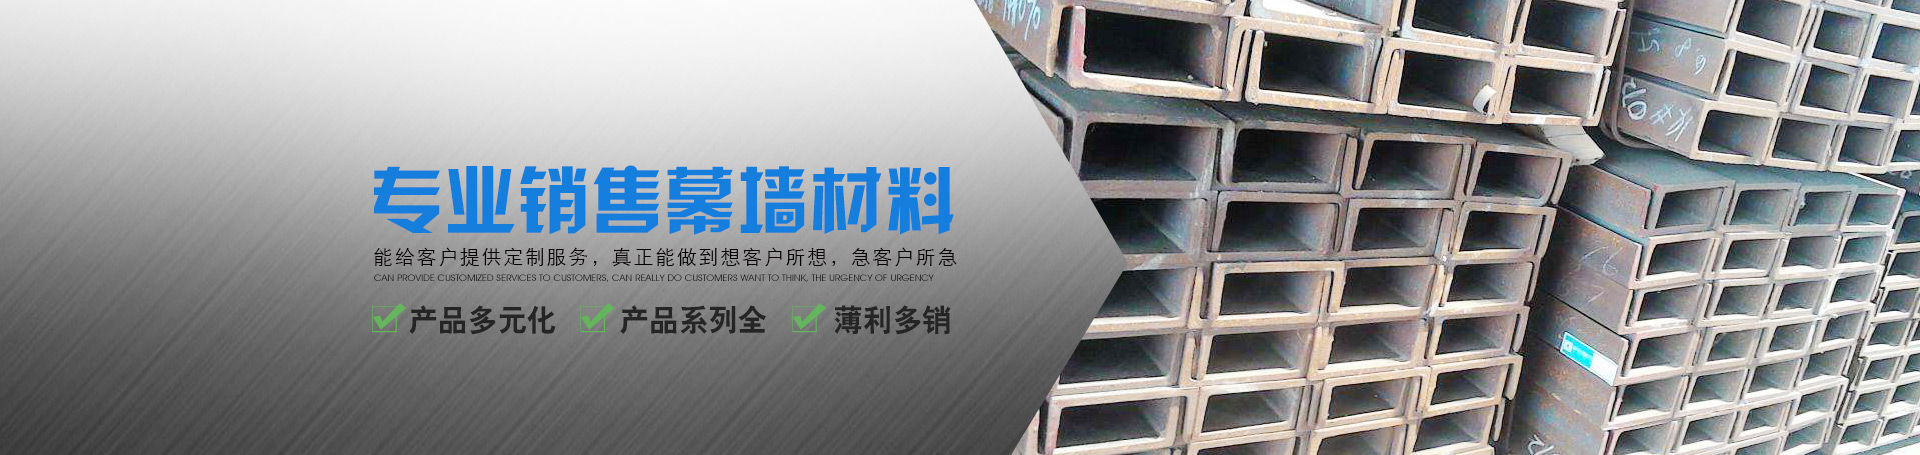 湖南蕭峰幕墻有限公司 - 長沙鋼材|長沙幕墻材料|長沙石材加工